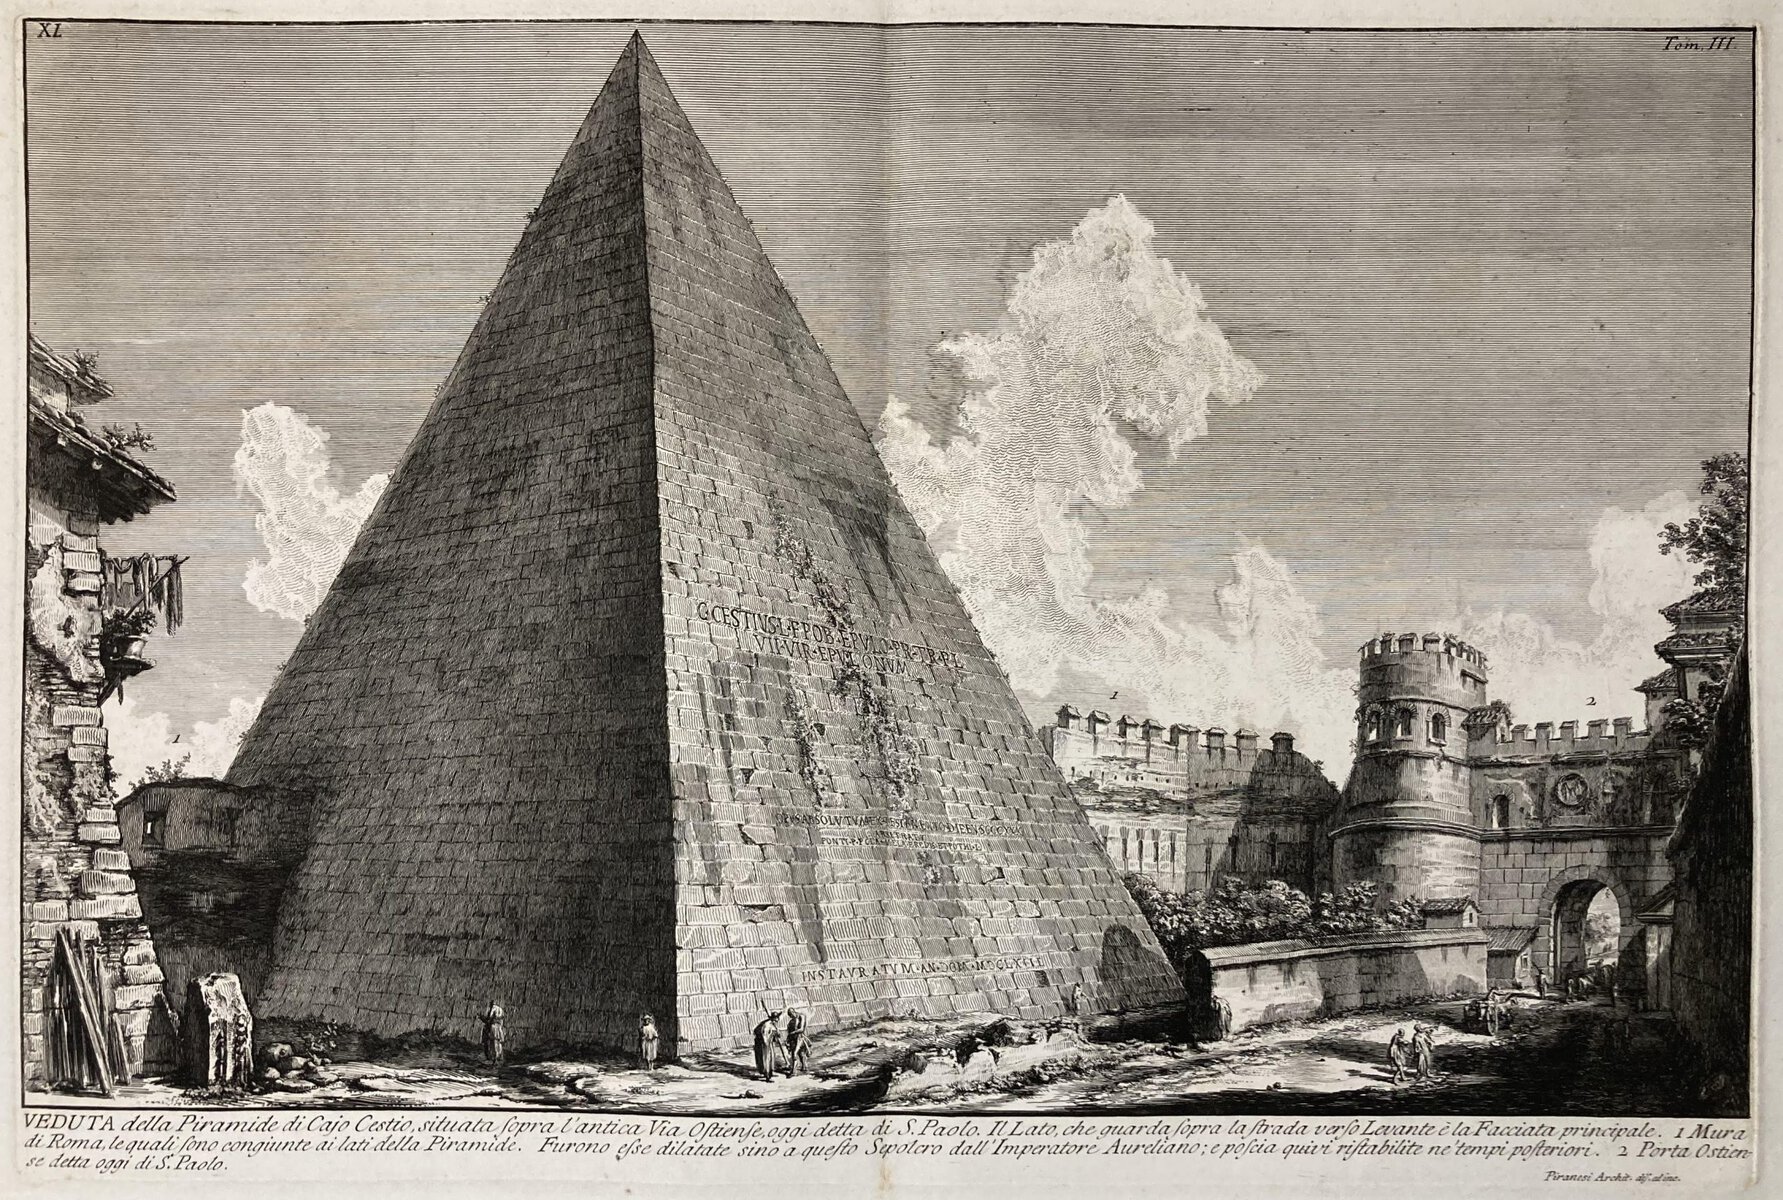 A print showing Ciao Cestio in Rome, by Giovanni Battista Piranesi